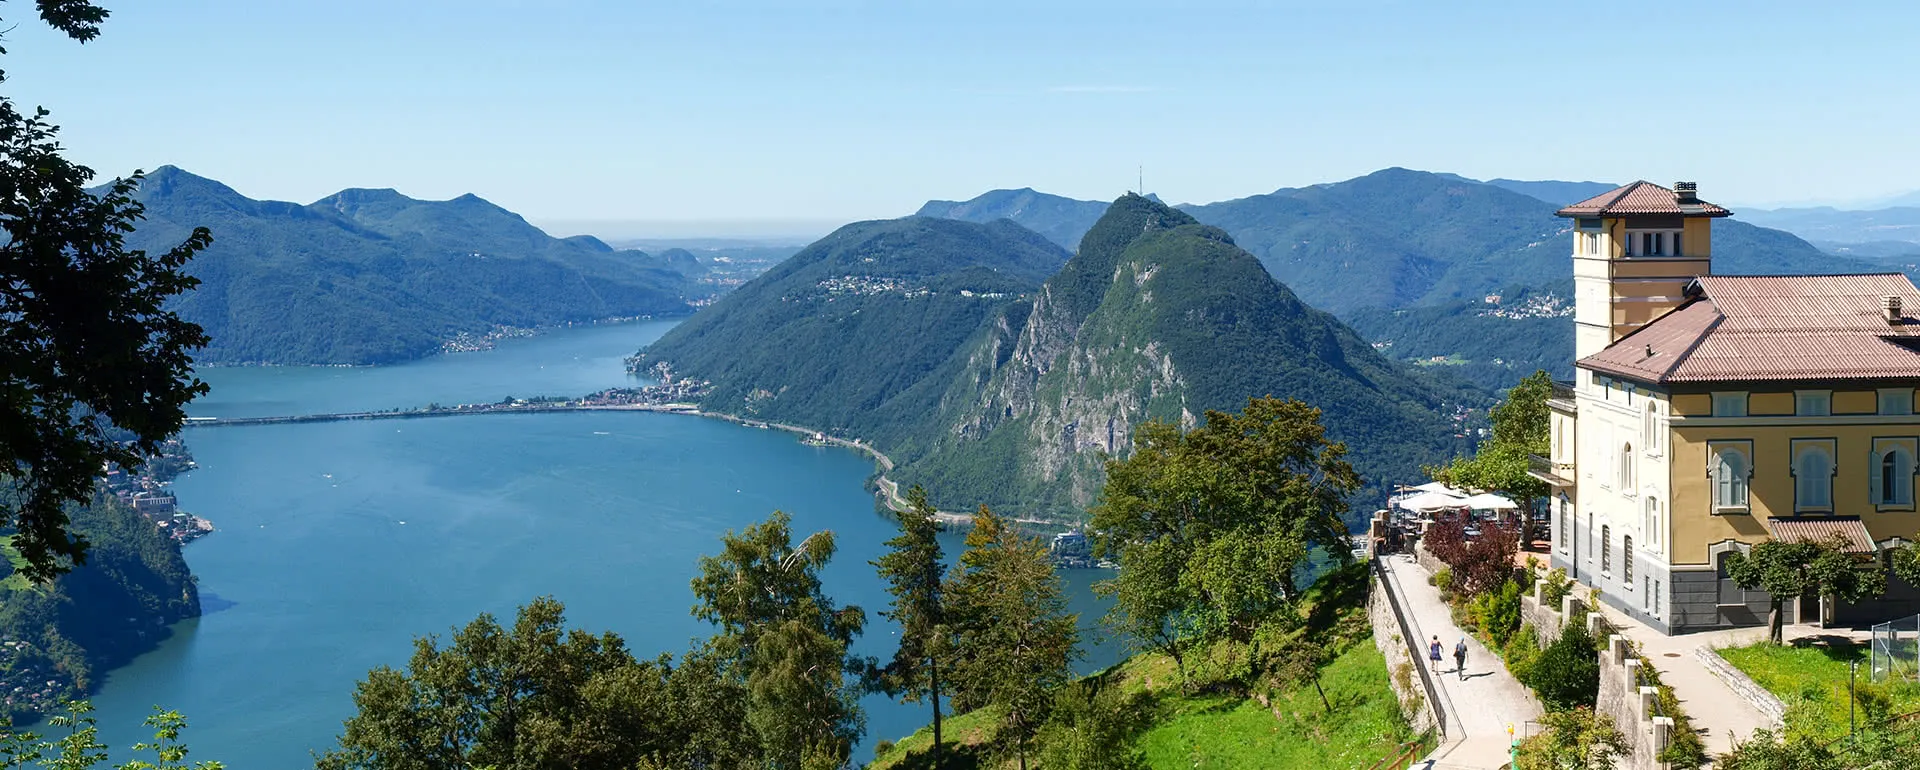 Lugano - das Reiseziel mit Jugendherbergen